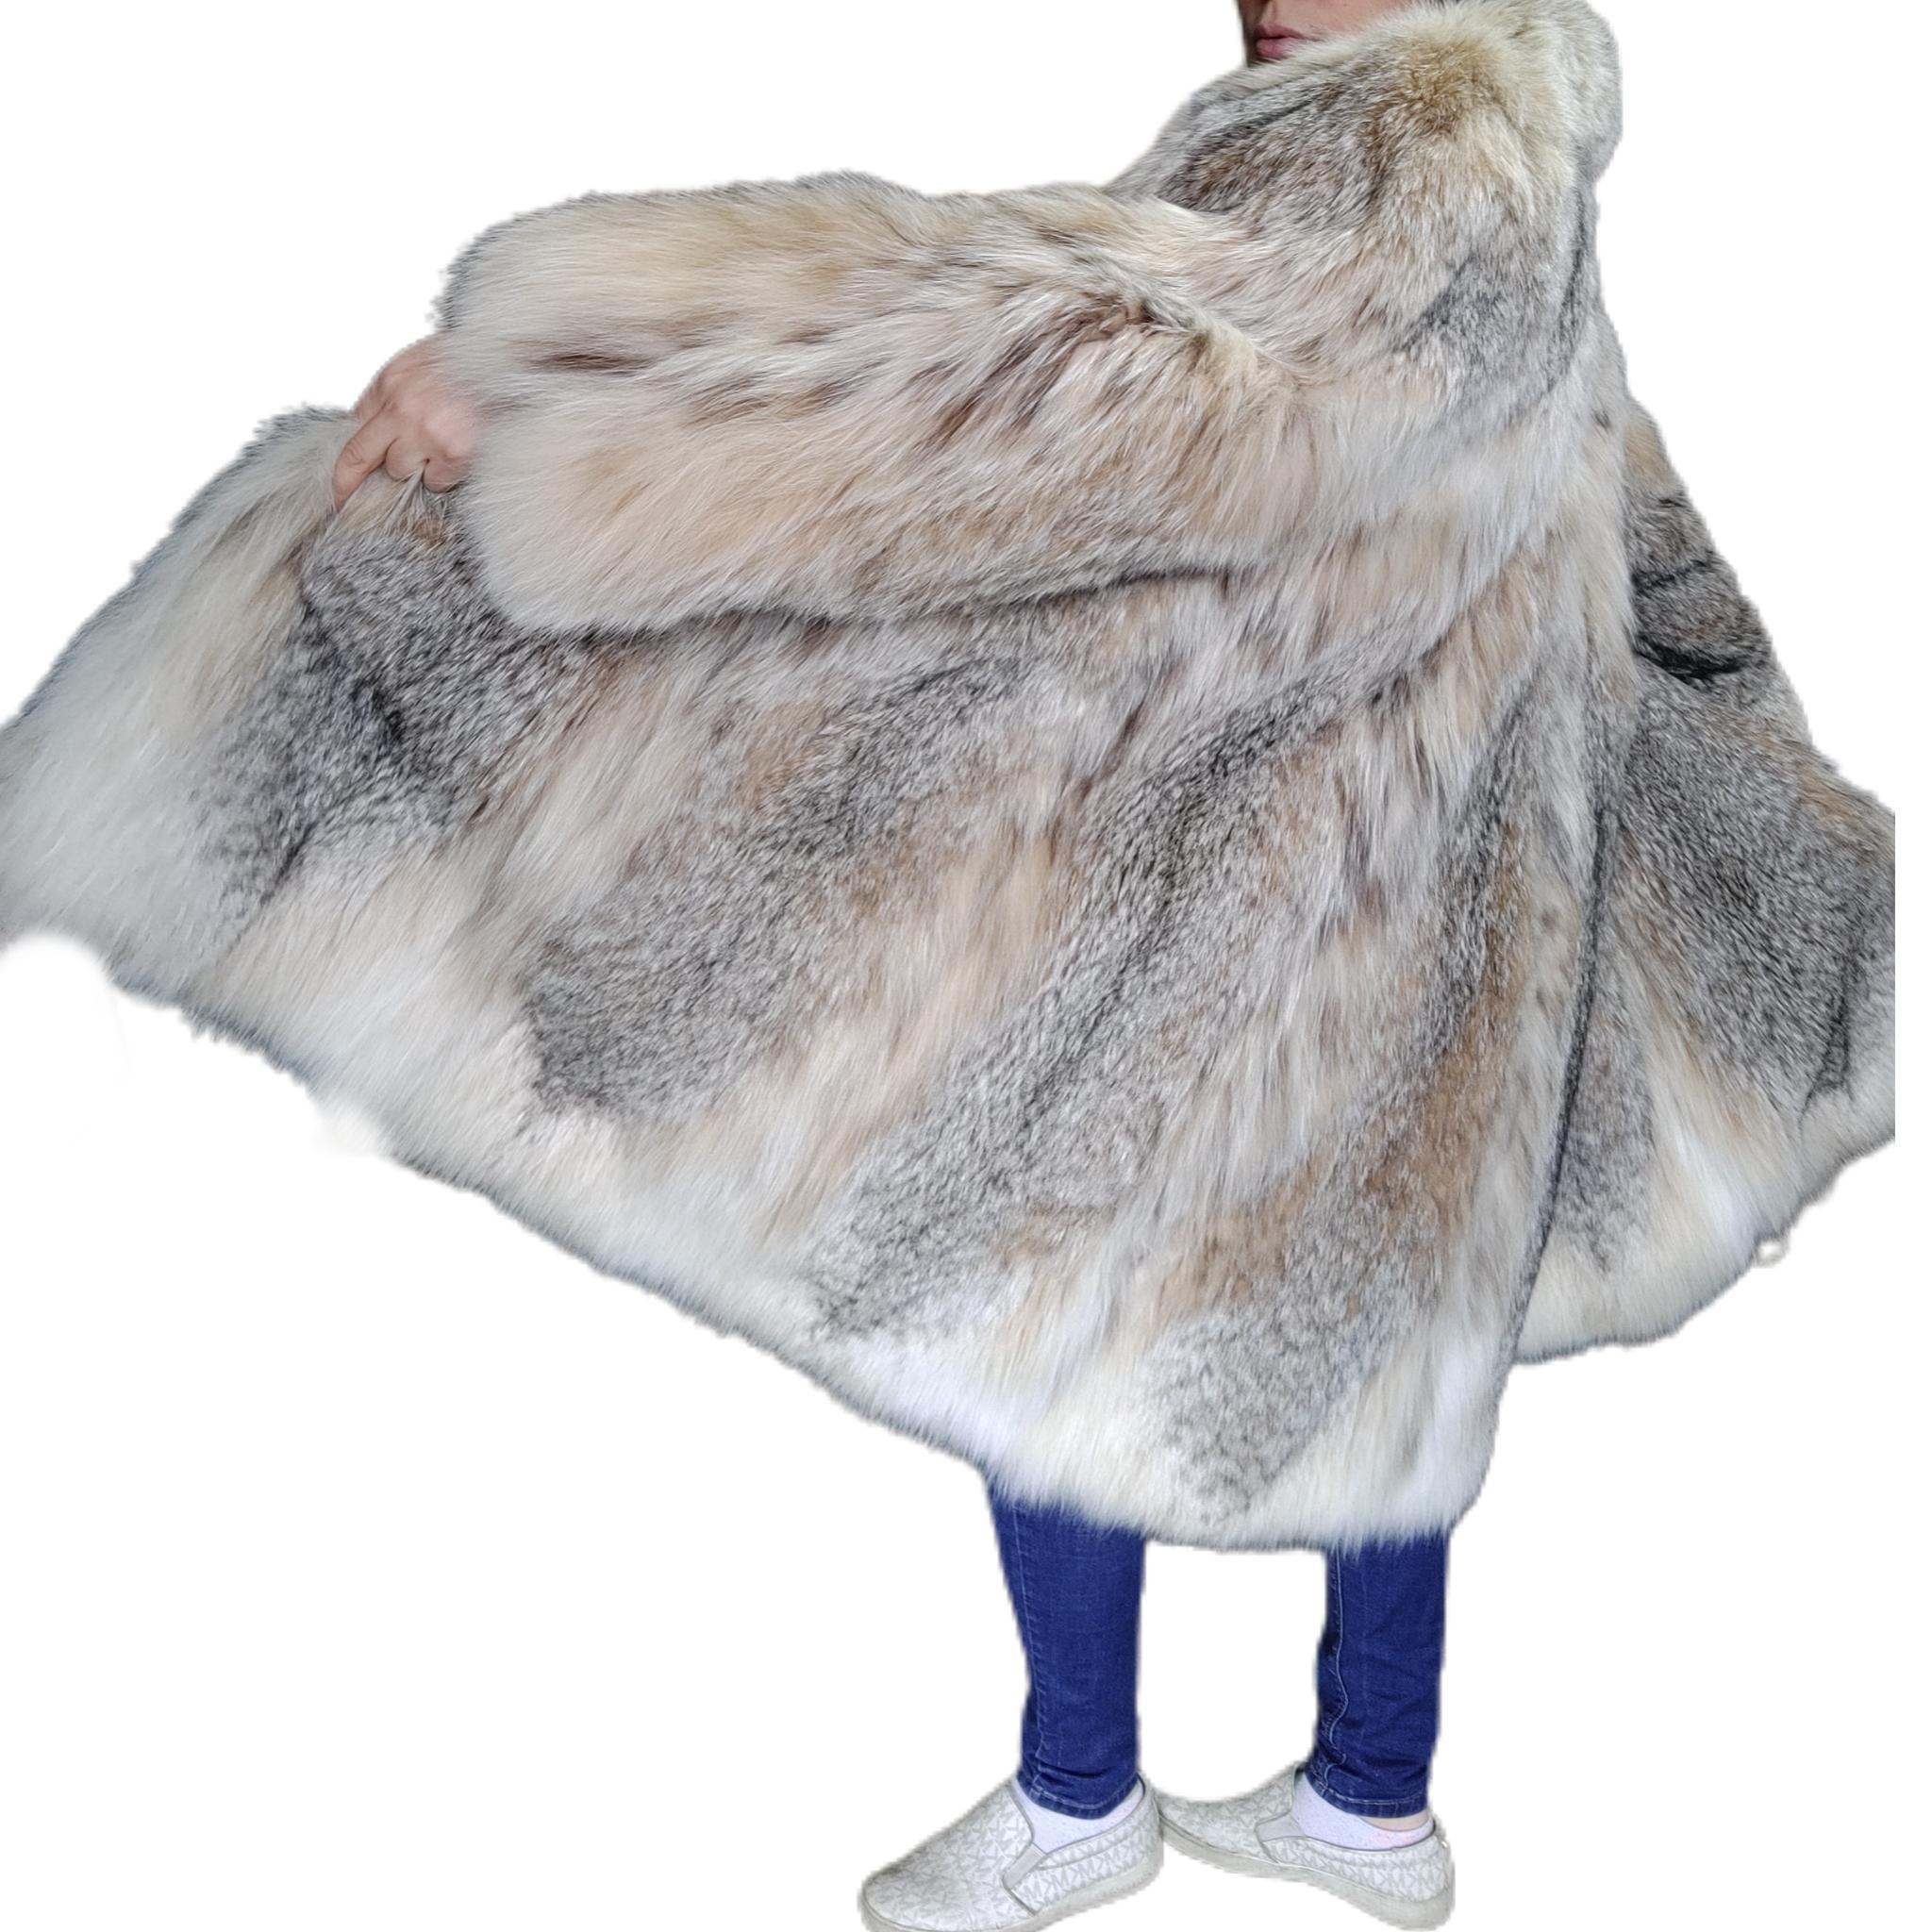 Manteau léger en fourrure de lynx, neuf, taille 14 L Pour femmes en vente